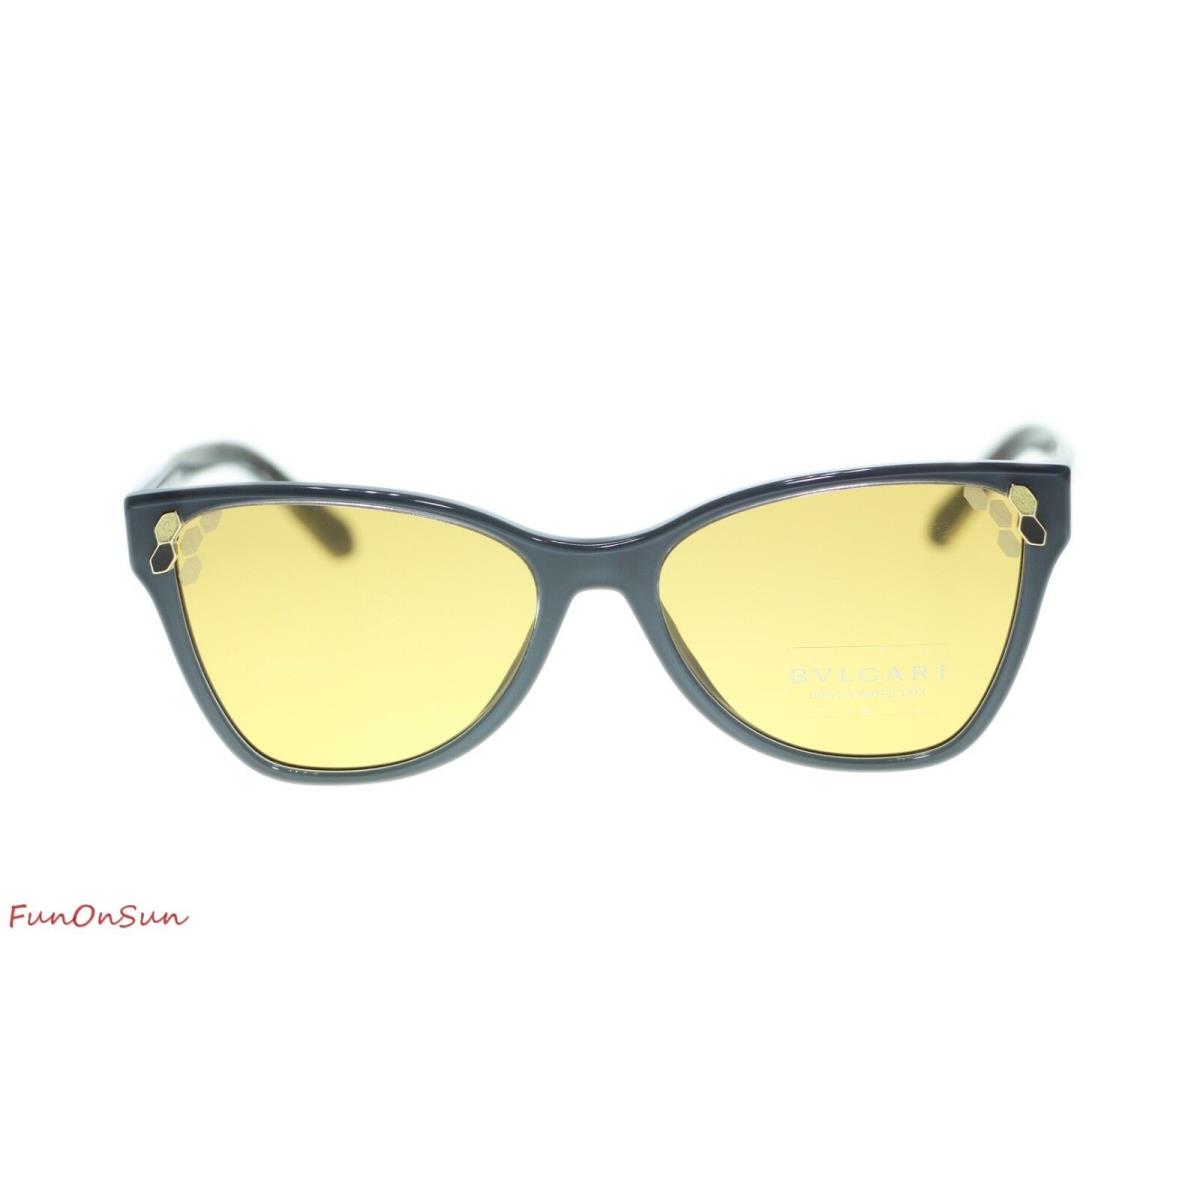 Bvlgari Women`s Cat Eye Sunglasses BV8208 545585 Grey/yellow Lens 56mm